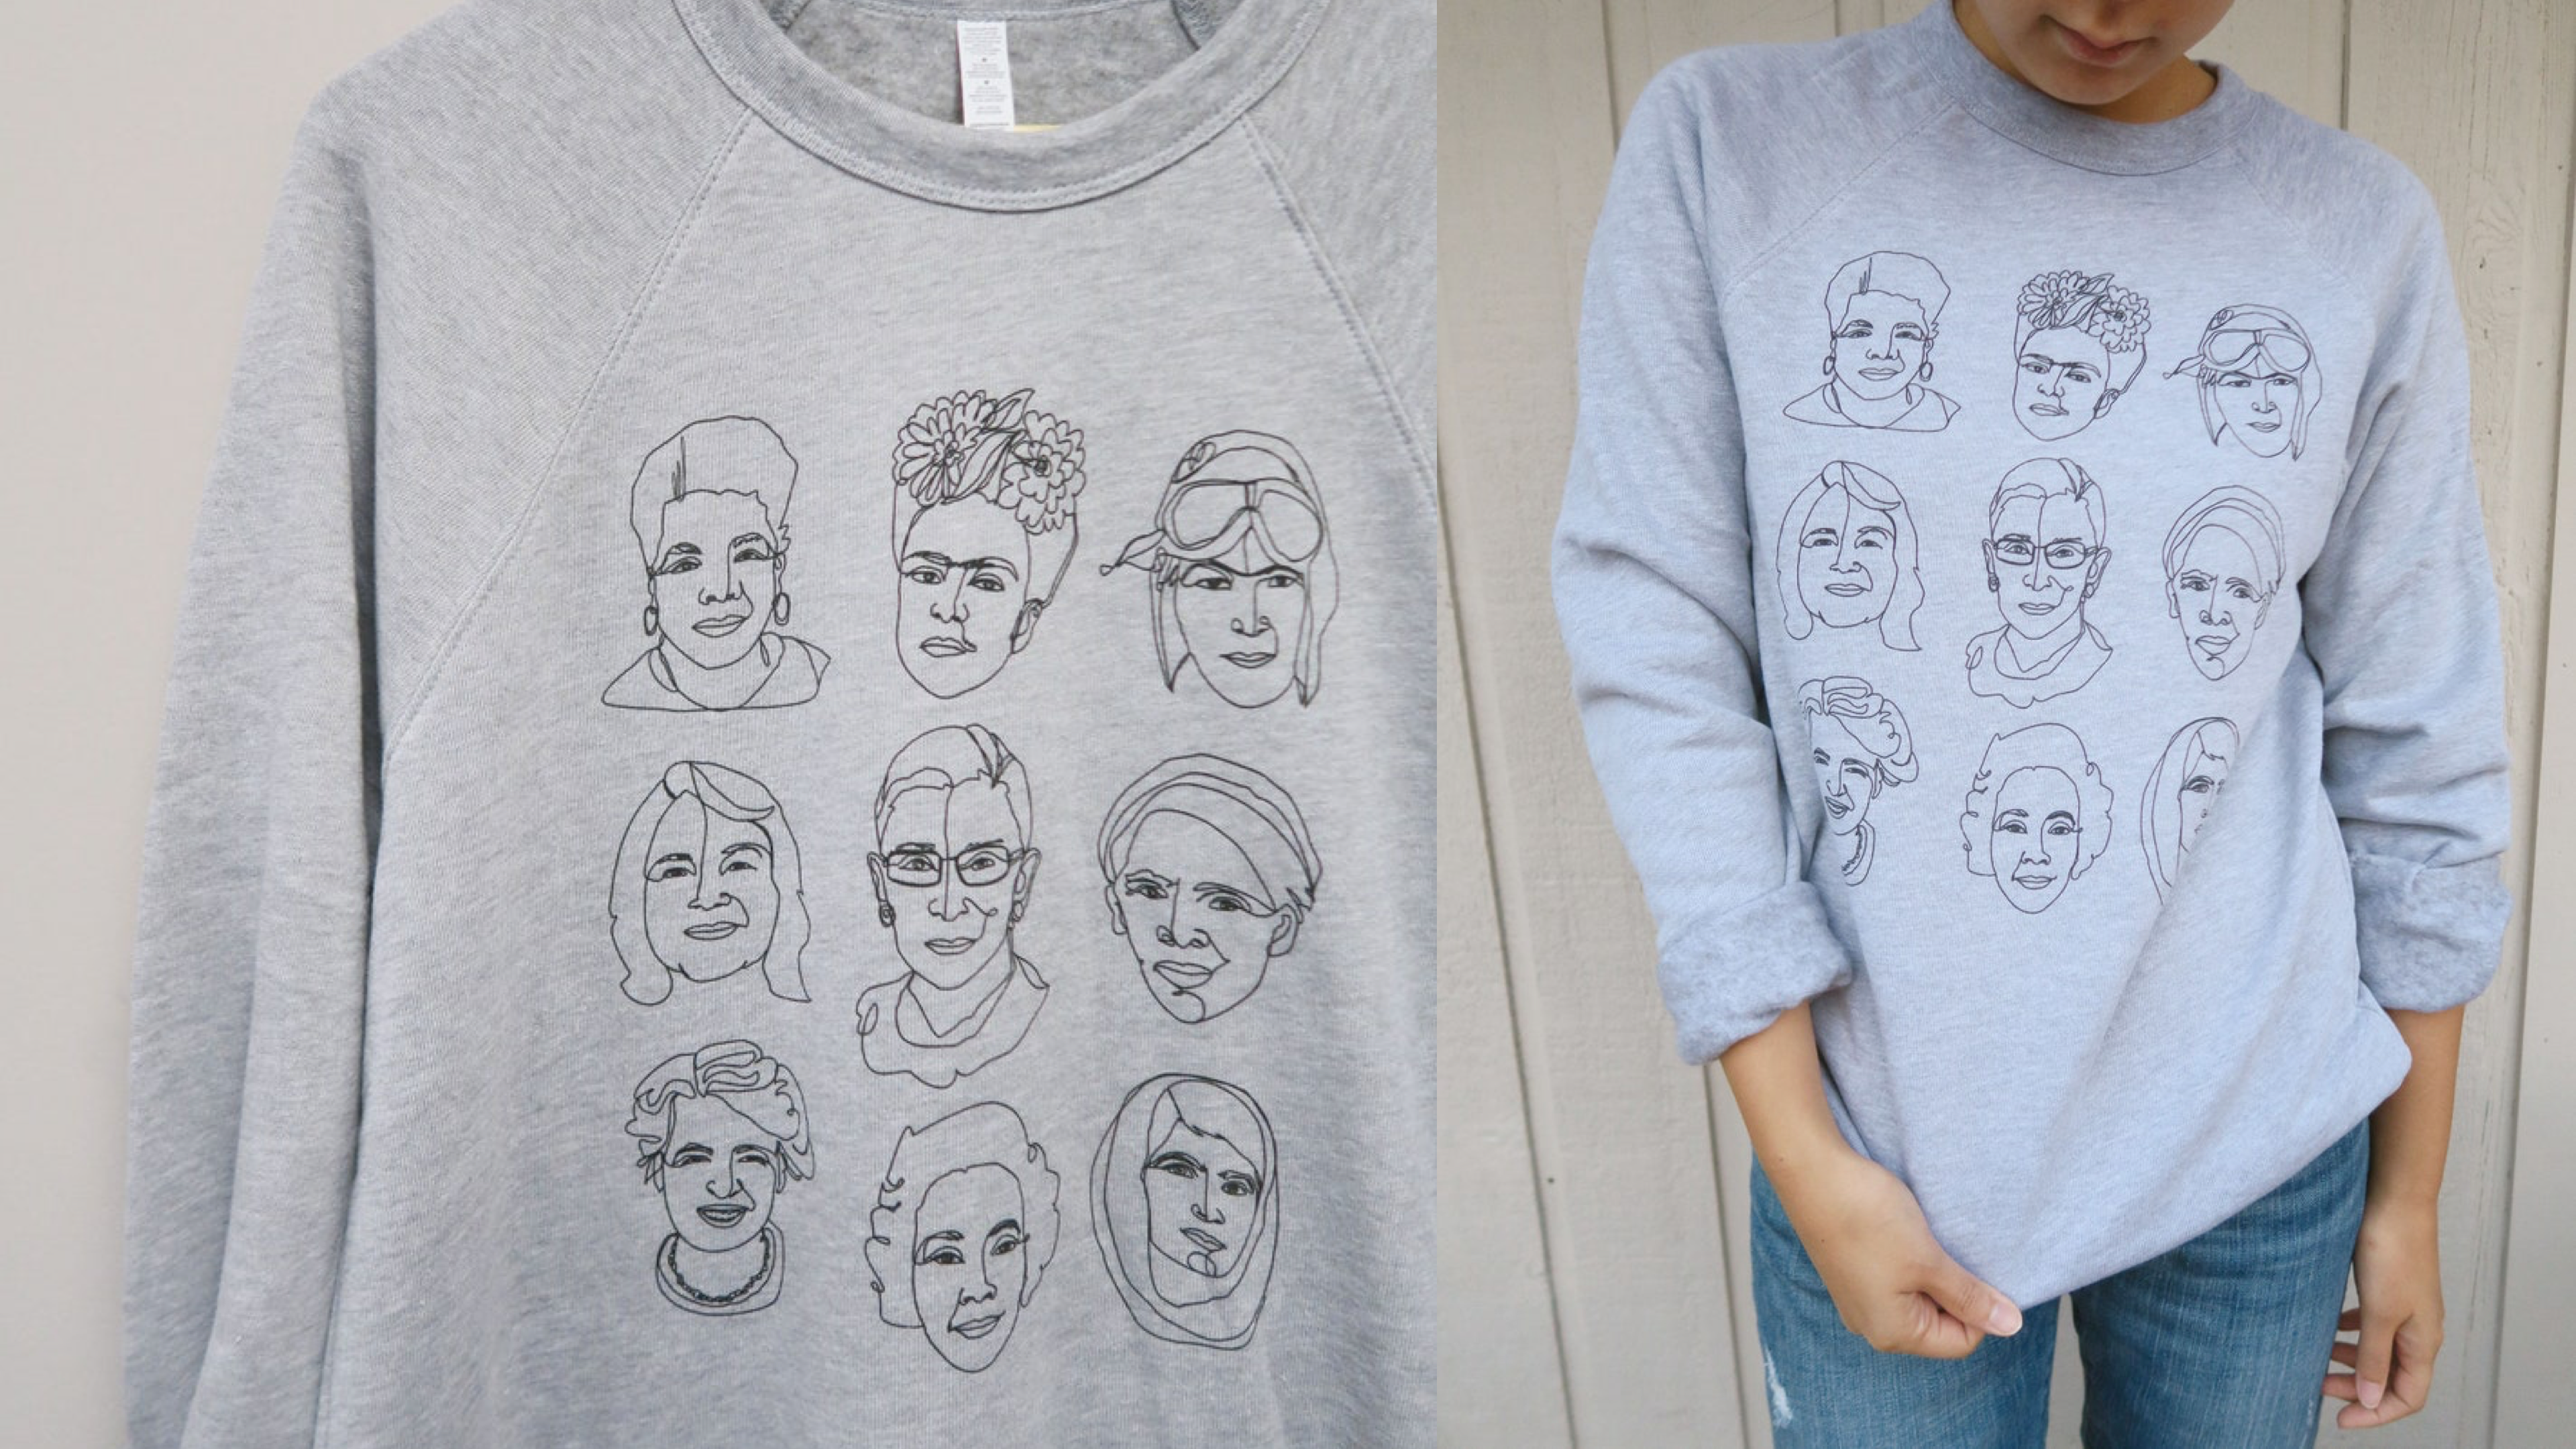 A sweatshirt honoring her heroines… 